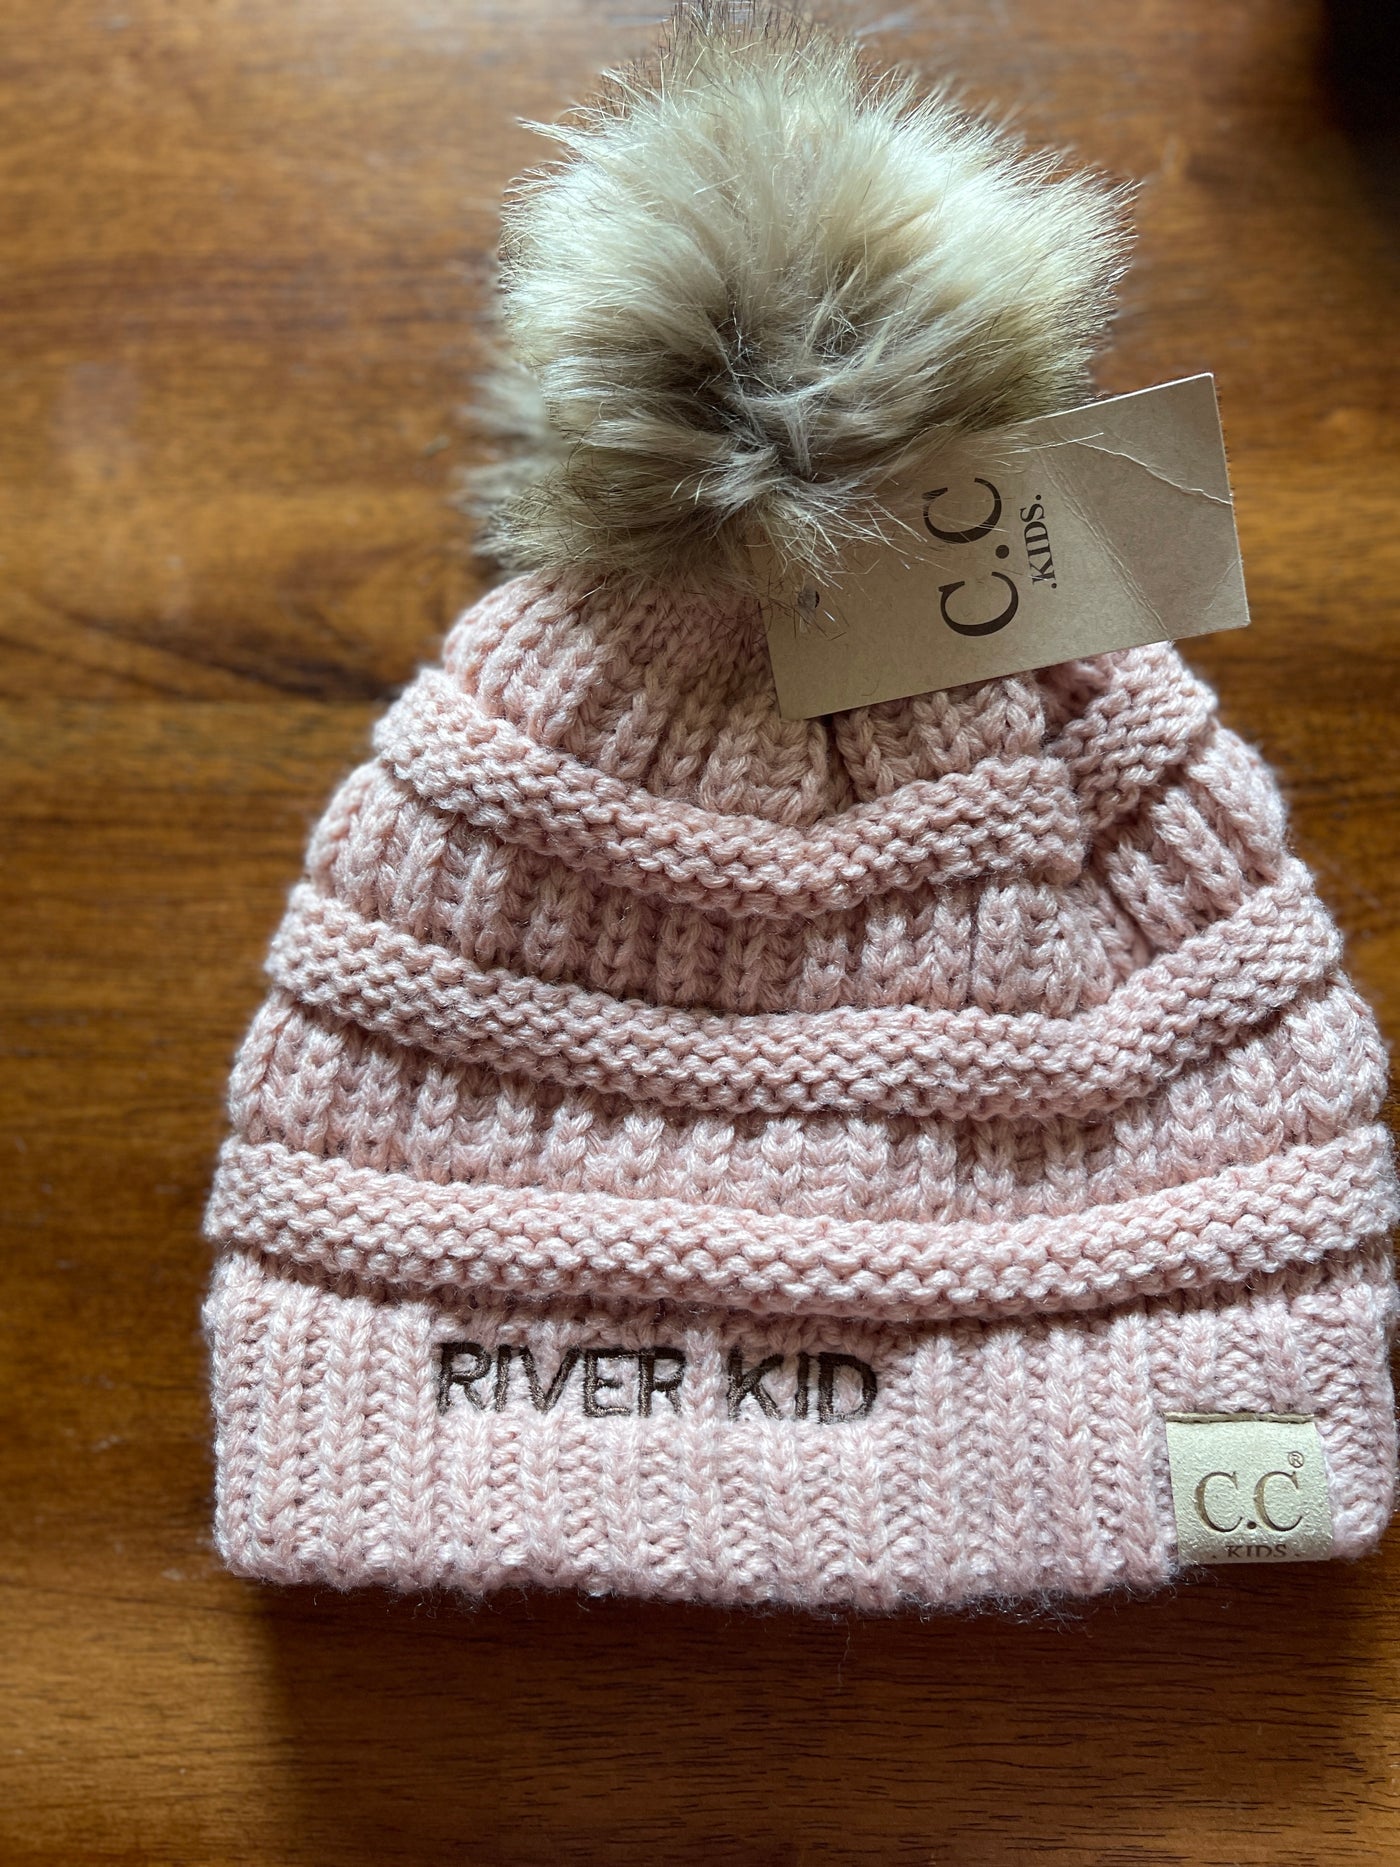 River Baby pom hat